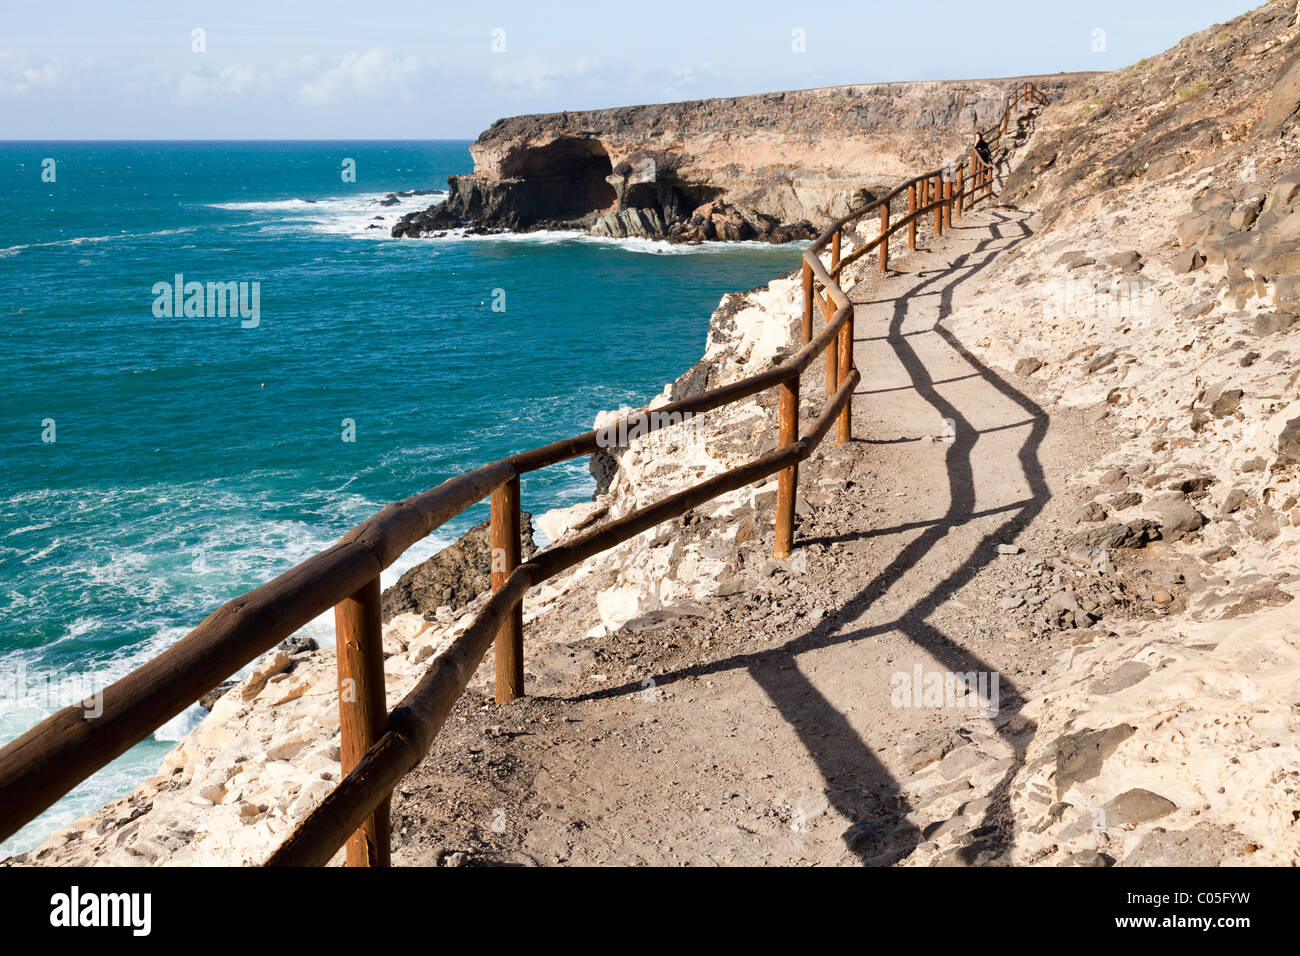 Clifftop sentier promenade pour voir les grottes près de la station balnéaire de Ajuy, sur la côte ouest de l'île canarienne de Fuerteventura Banque D'Images